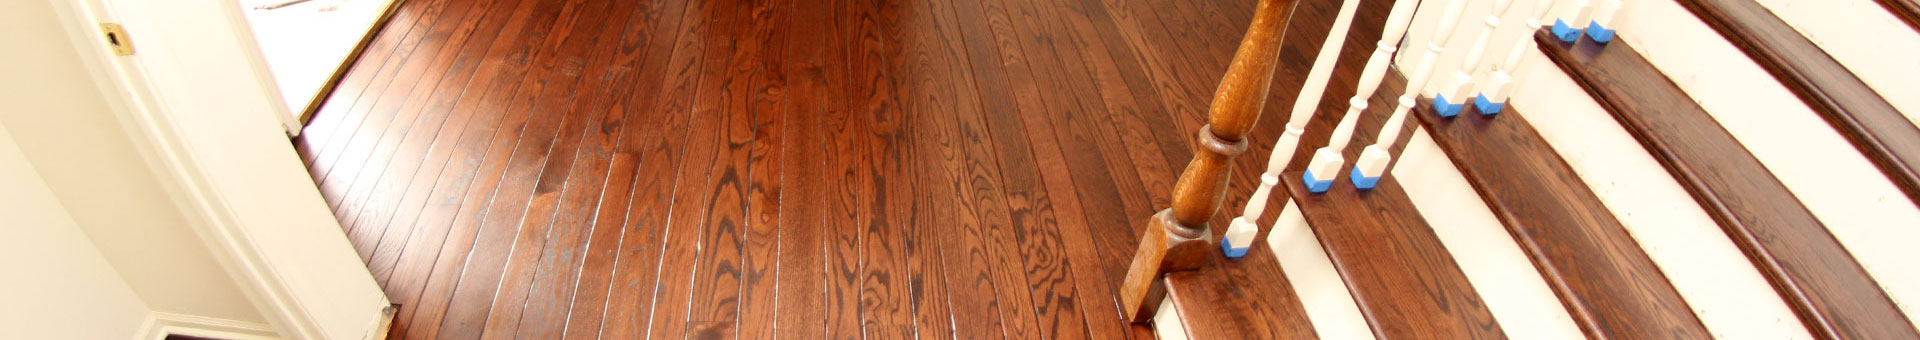 Wood Floor Restoration Plymouth Devon | Oak Wood FloorRestoration Plymouth | Parquet Wood Floor Restoration Plymouth | Commercial Wood Floor Restoration Plymouth Devon | Saltash Cornwall